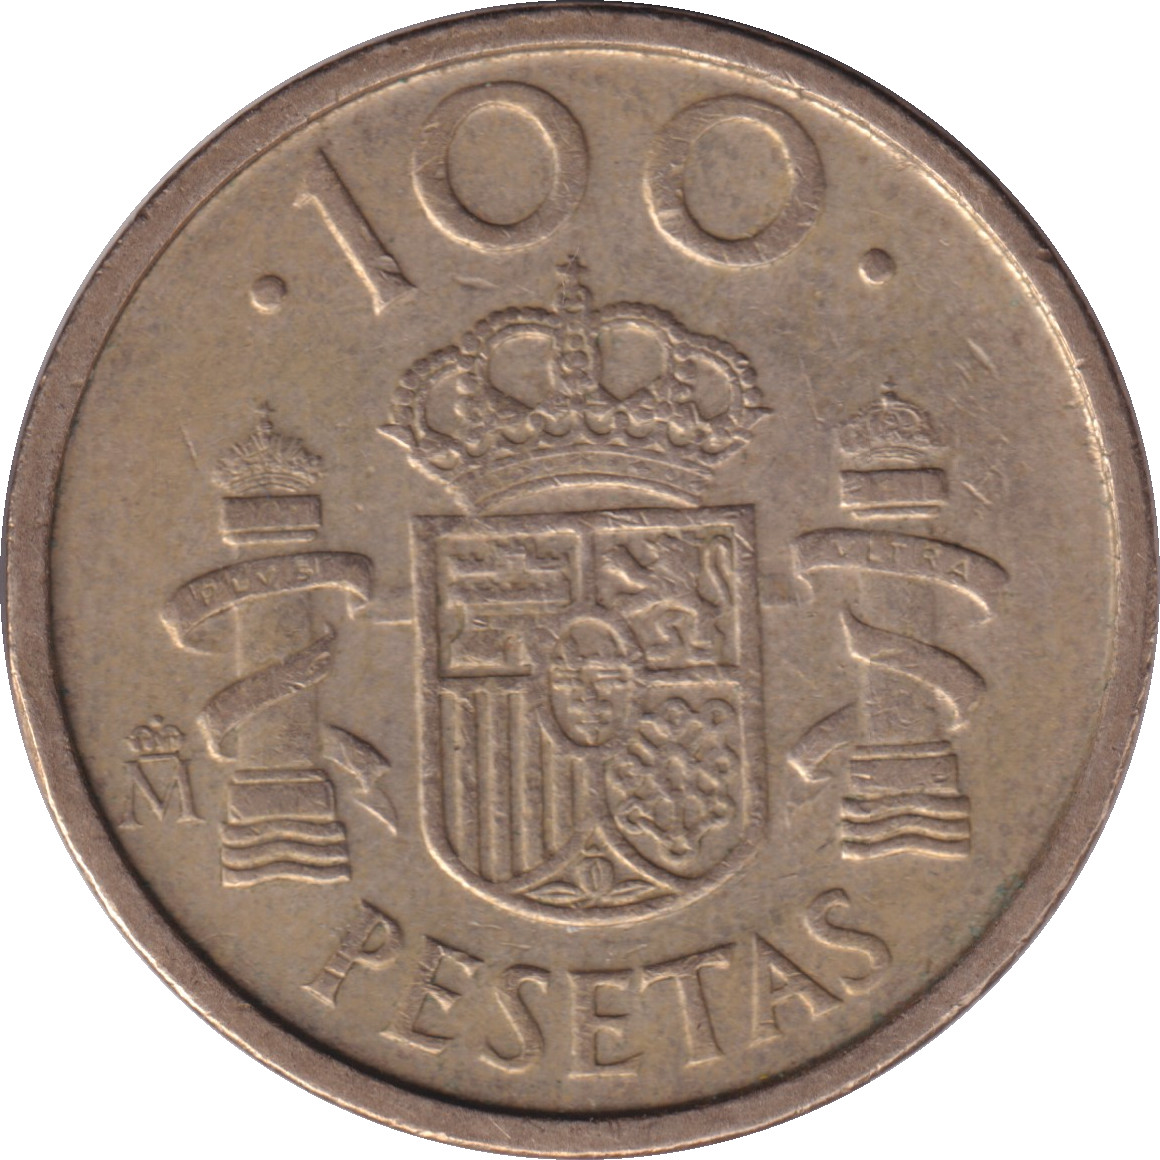 100 pesetas - Juan Carlos I - Type tardif - 100 PESETAS